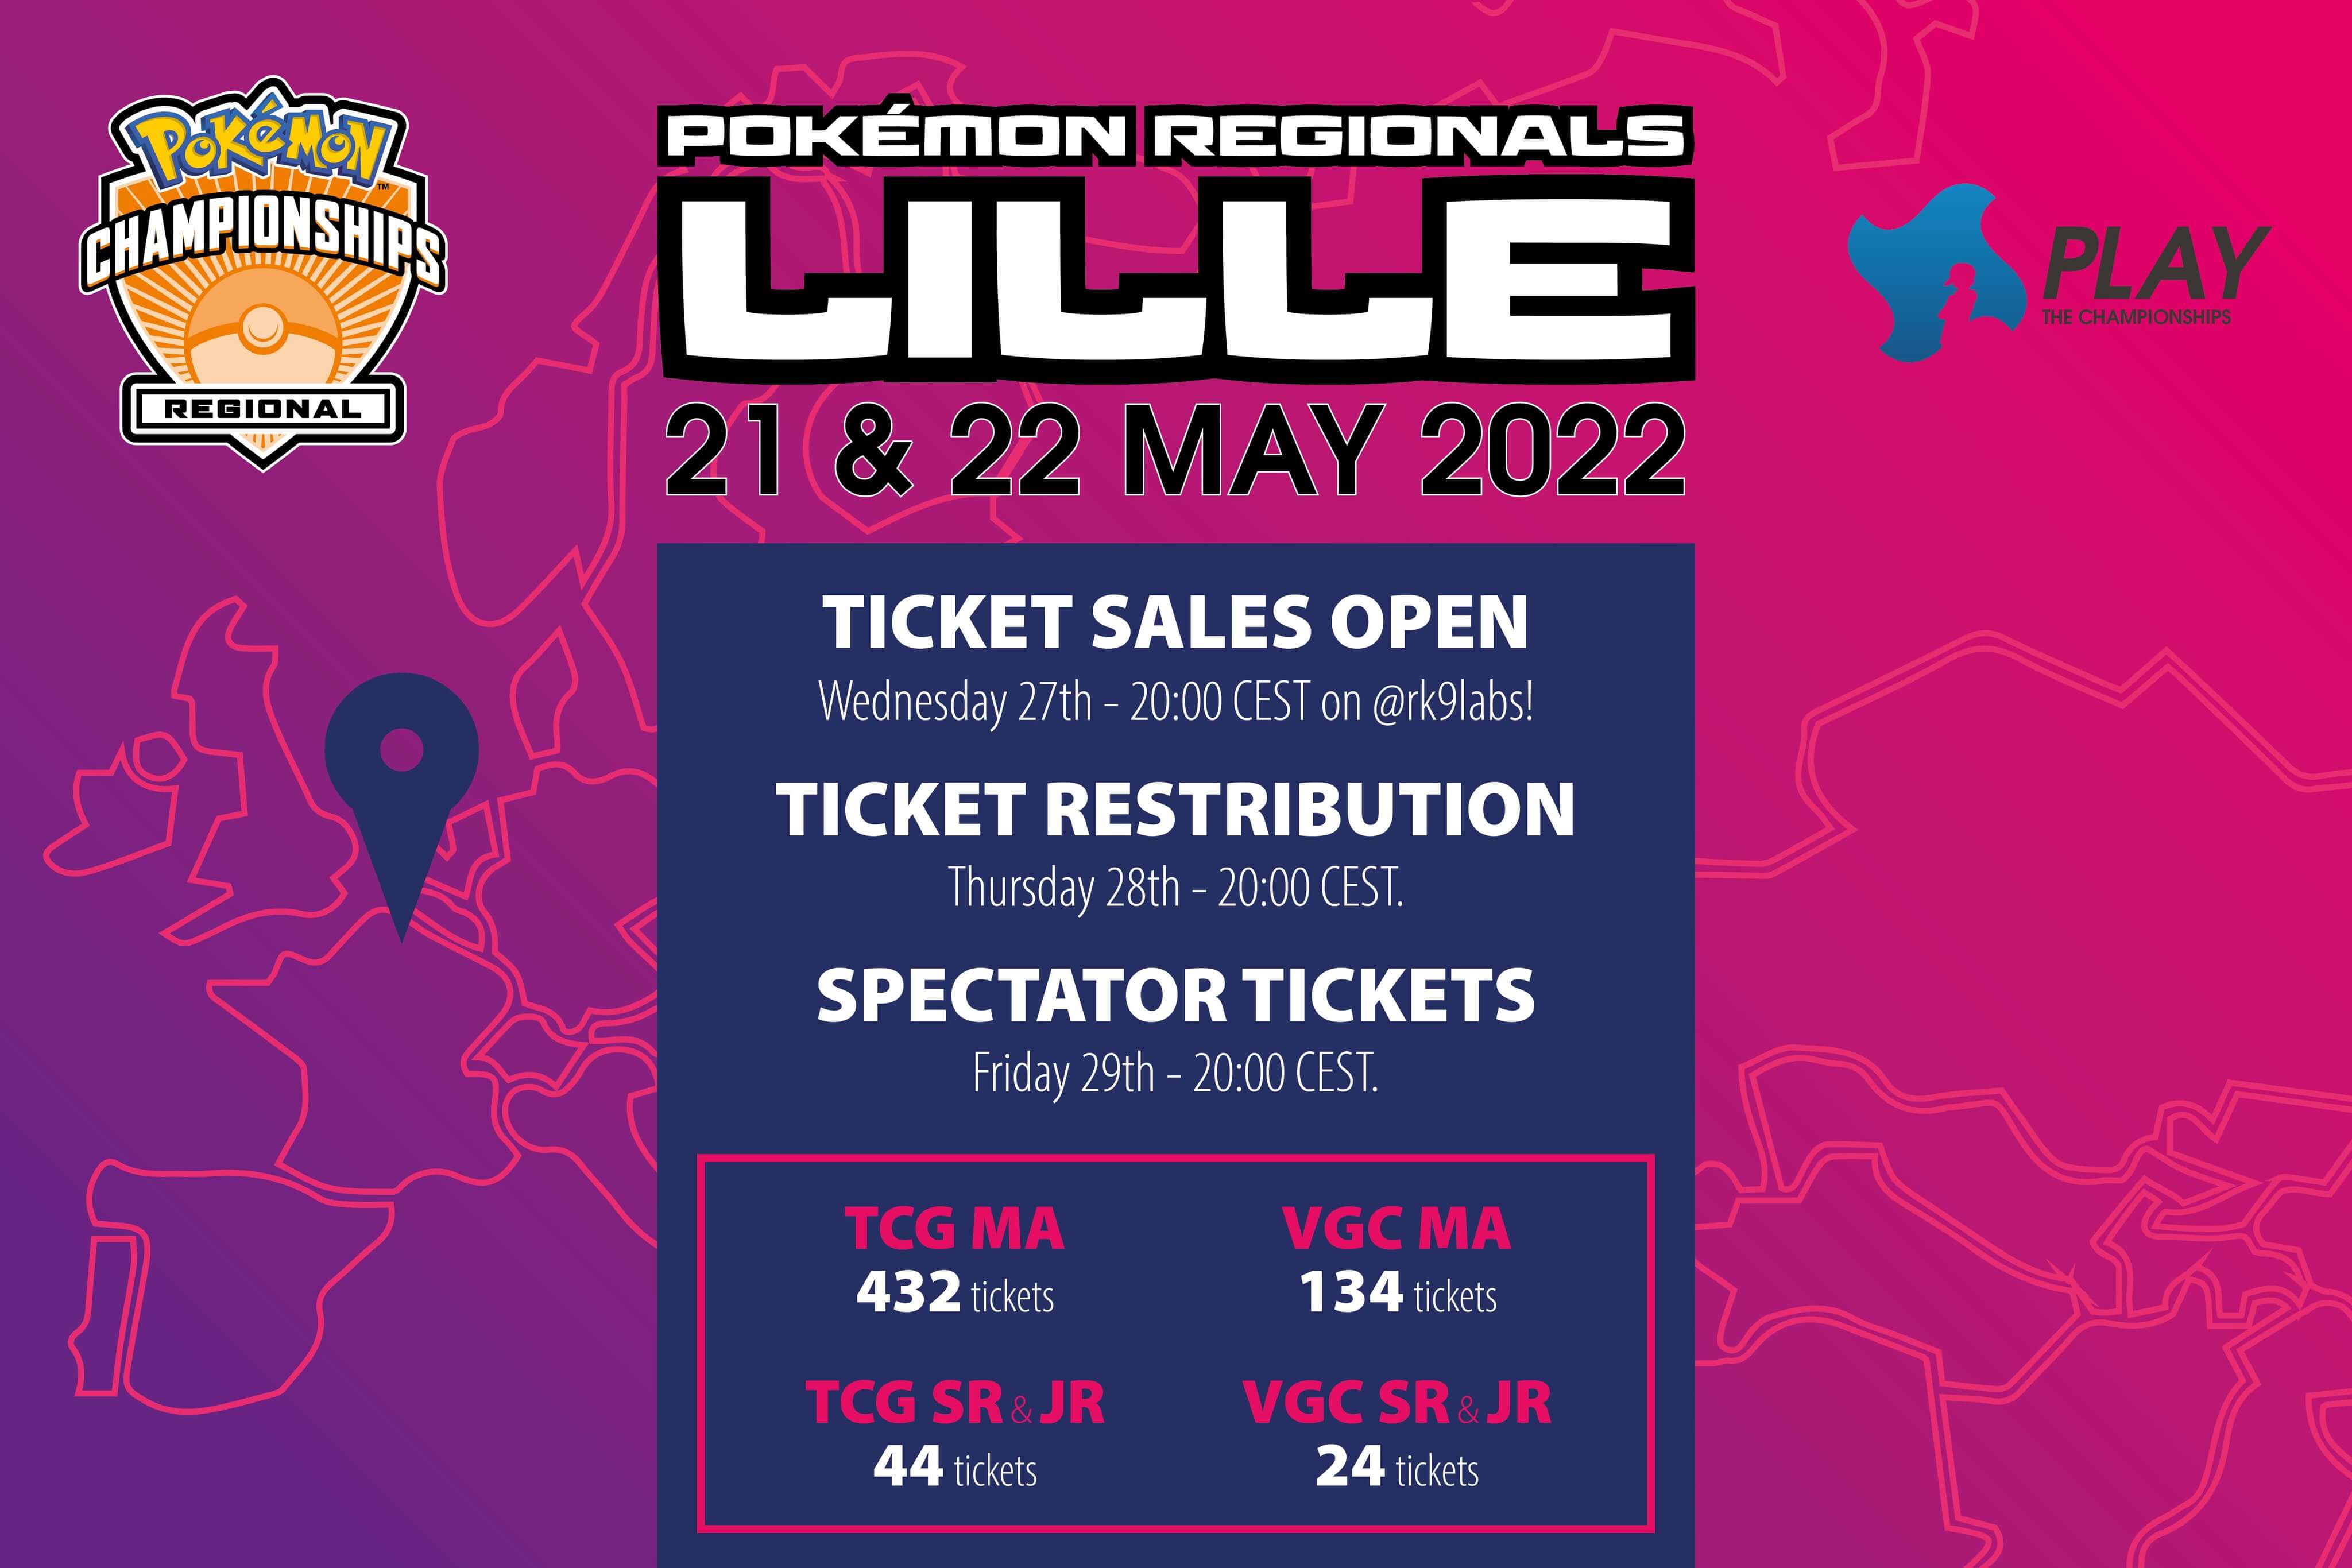 Pokémon Lille 2022 Regional Championship Announcement!